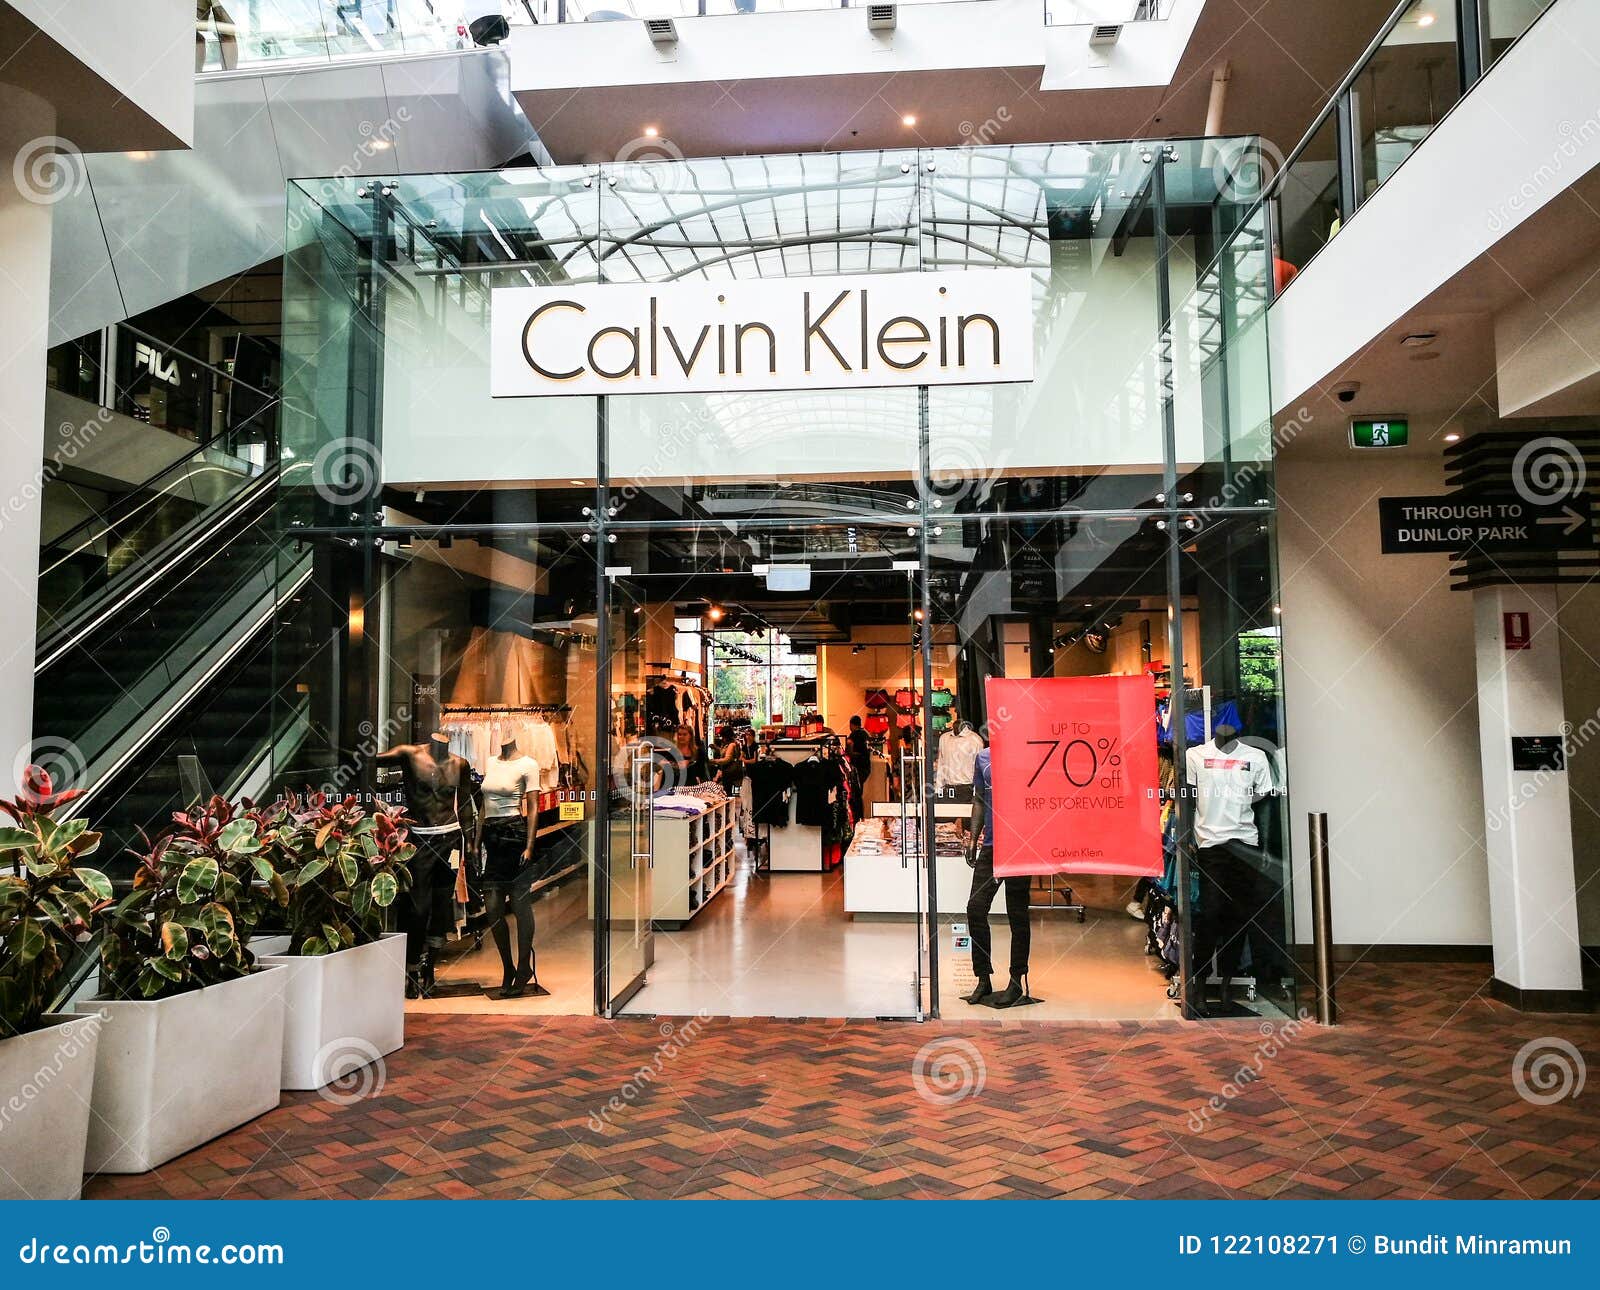 Calvin Klein Jeans, Platinum Apparel, Underwear, Performance and ...